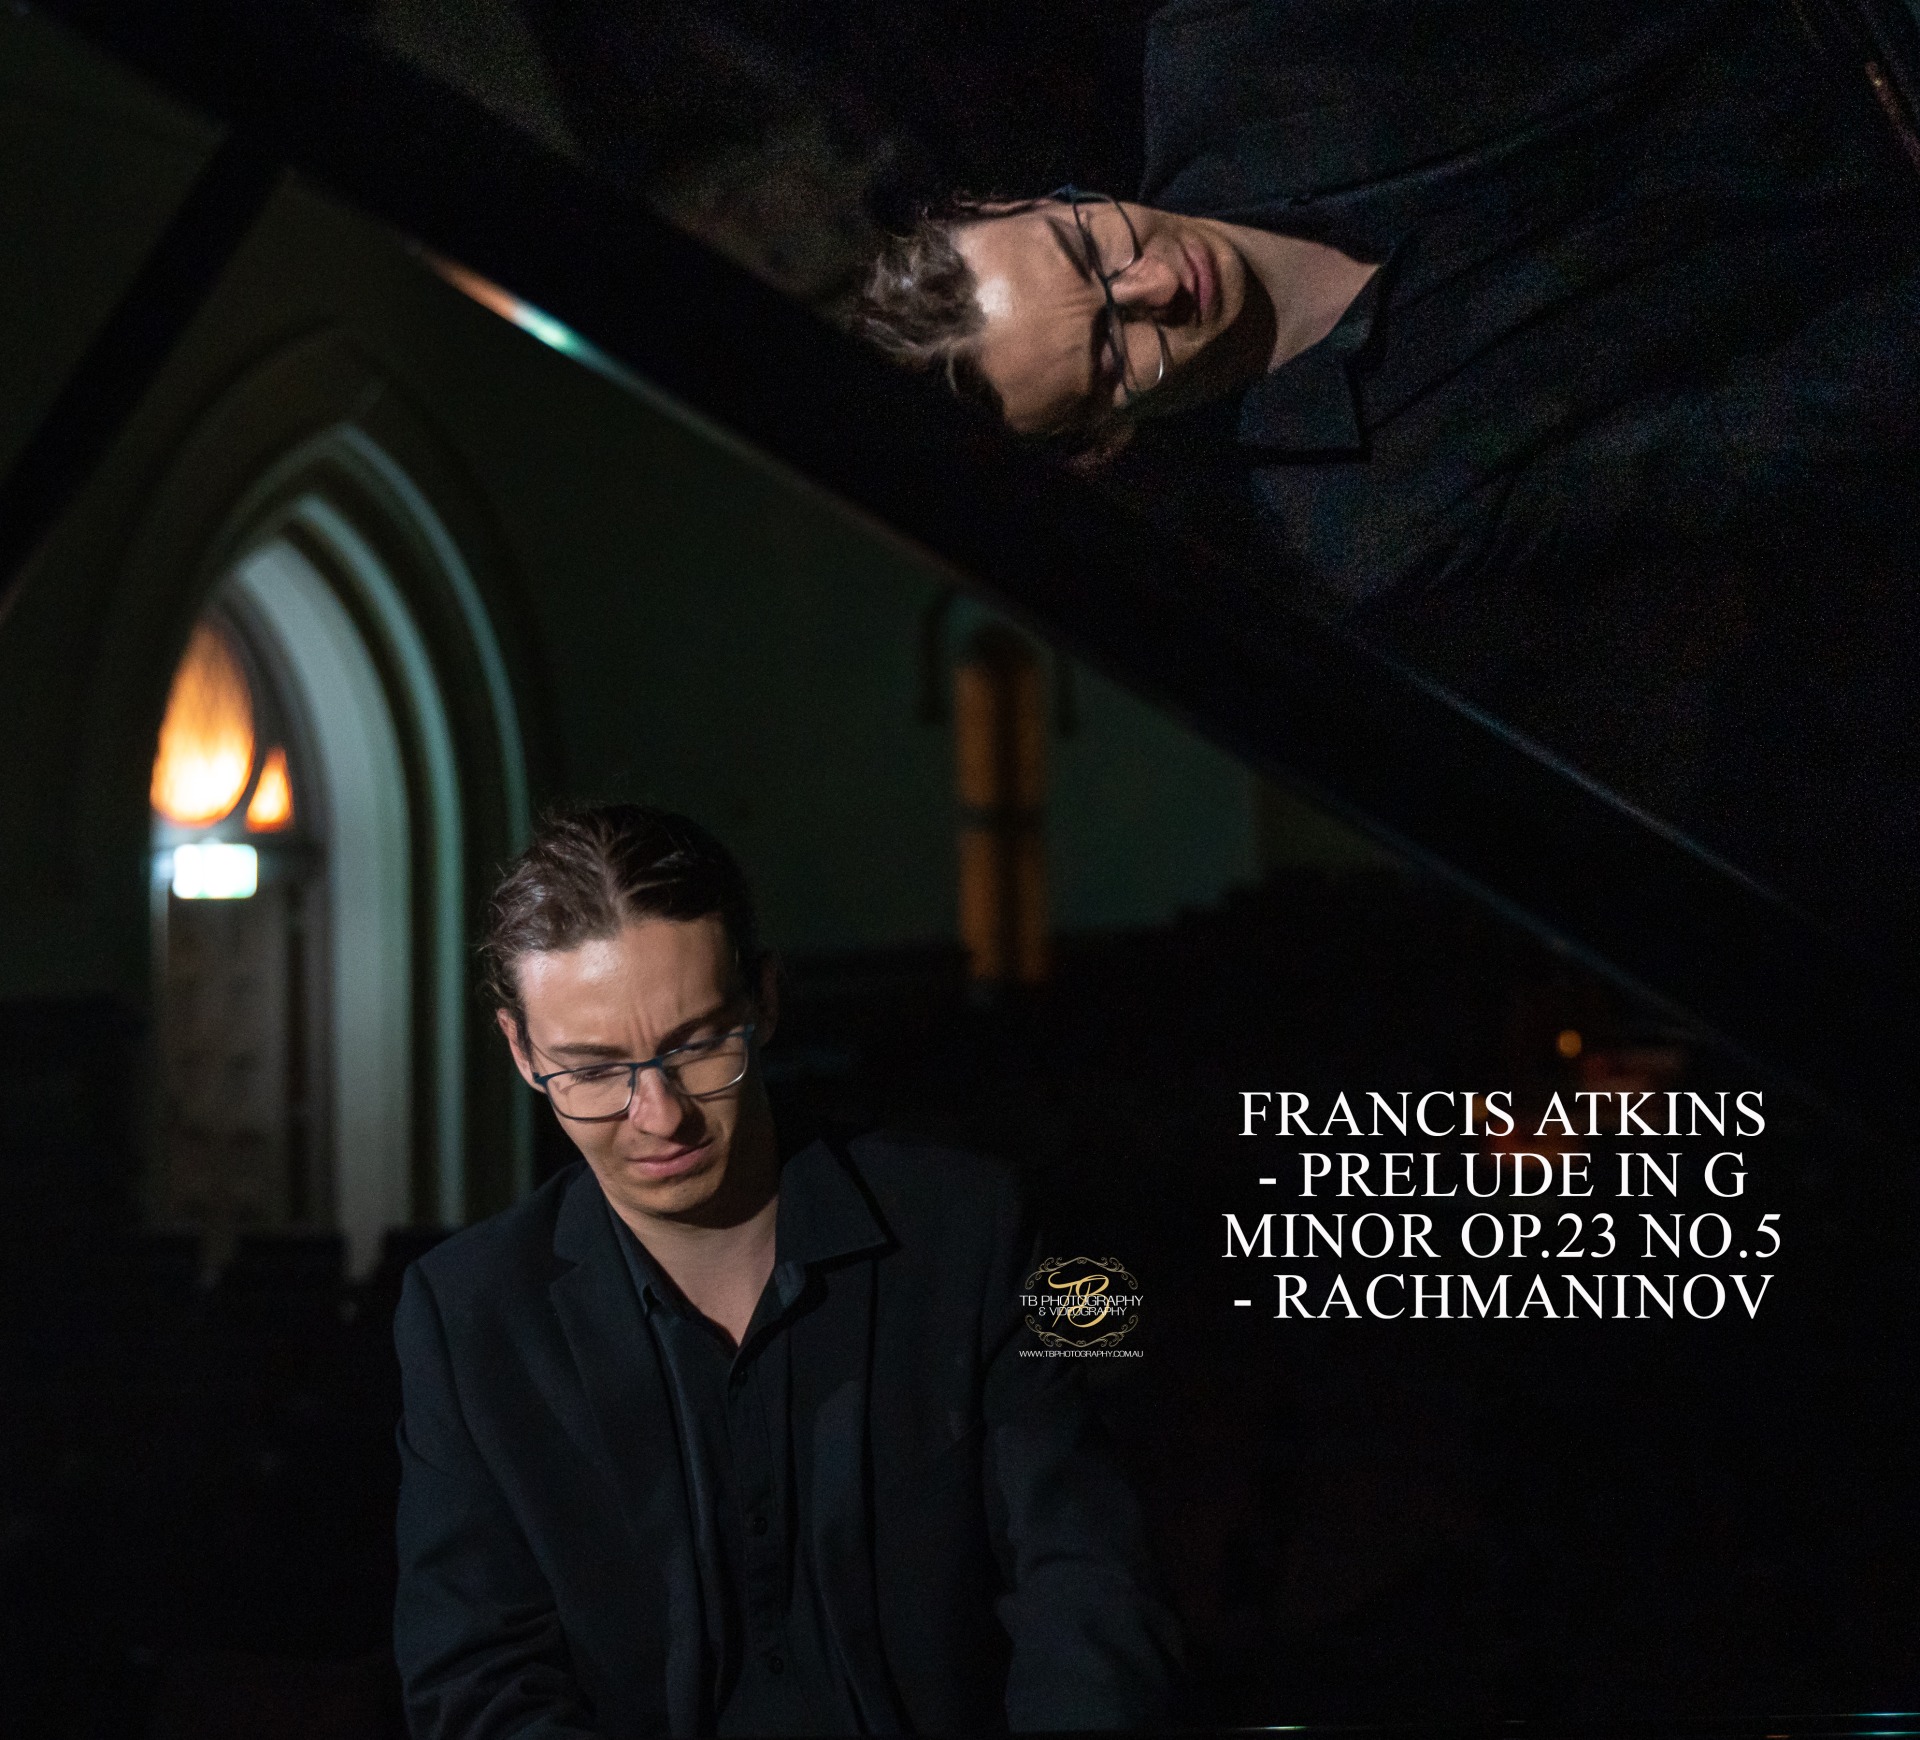 Francis Atkins - Prelude in g minor Op.23 No.5 - Rachmaninov